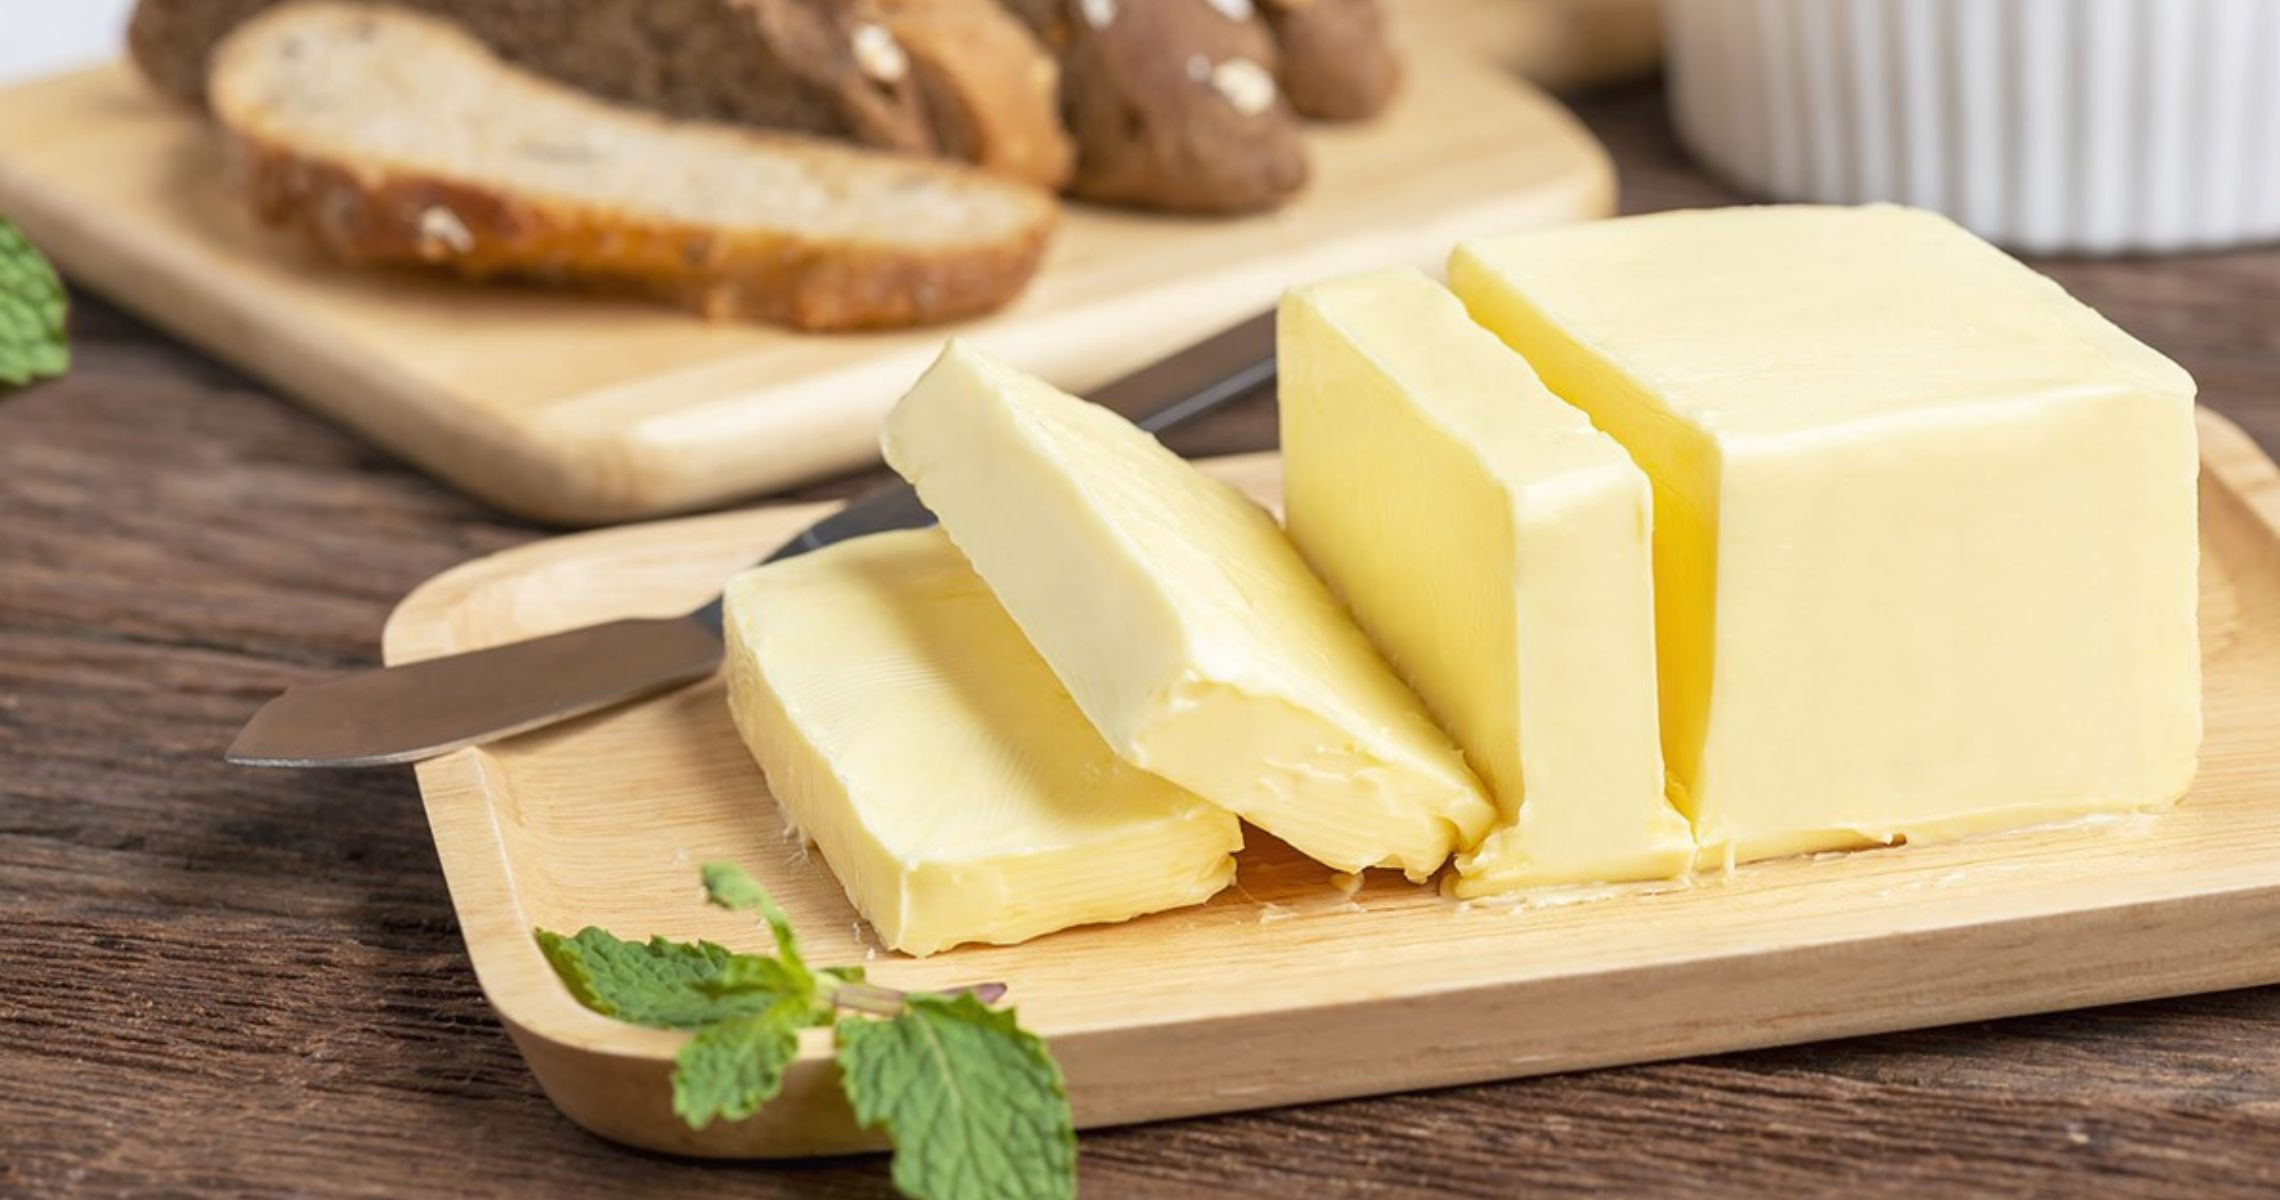 Bơ thực vật bao nhiêu calo? Ăn nhiều có béo không?